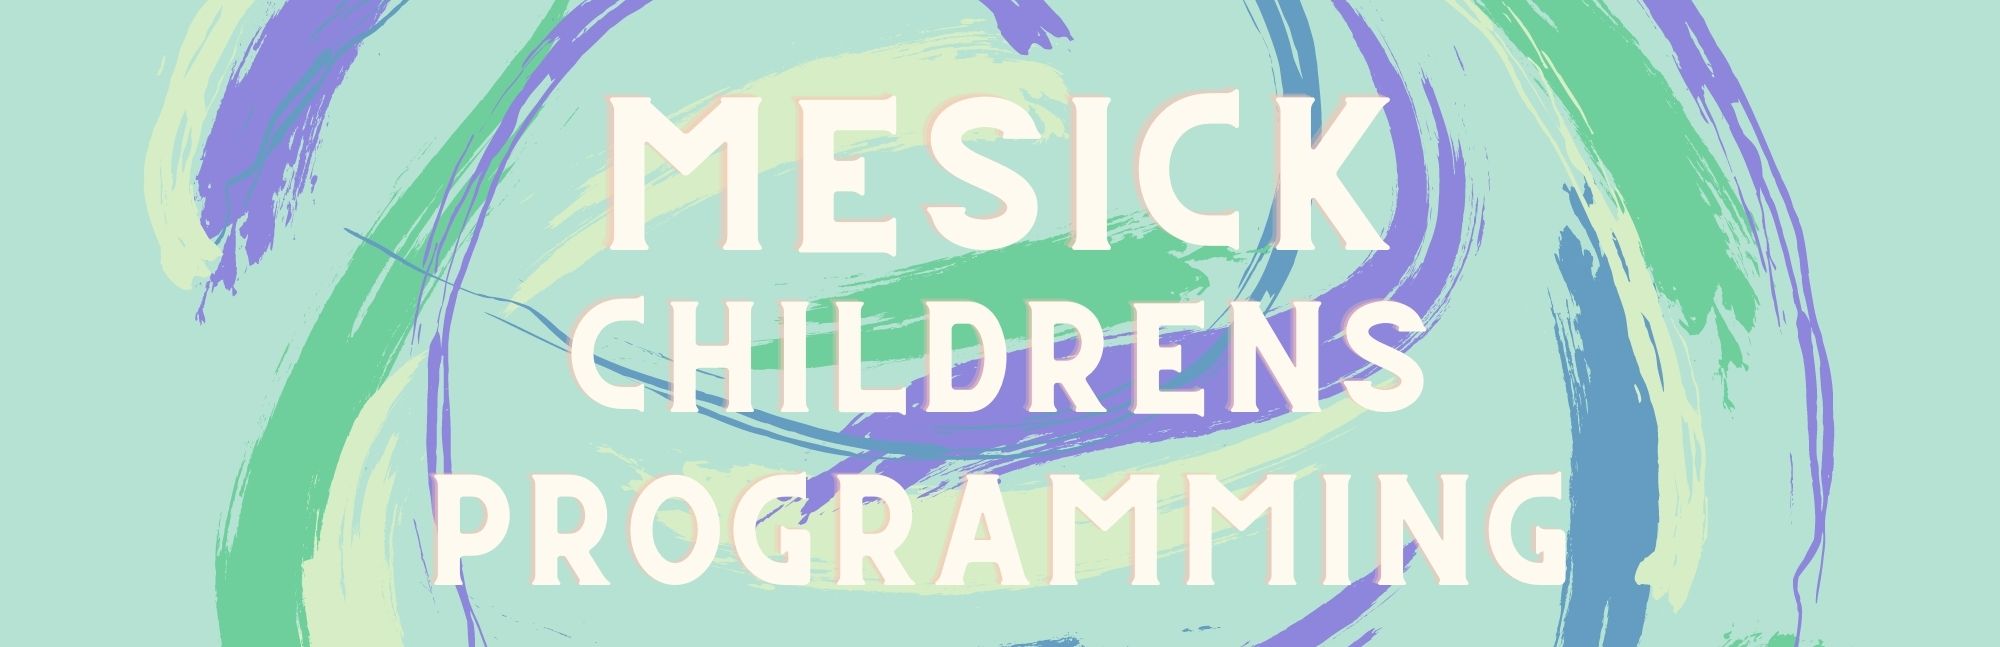 Mesick Children Programs.jpg